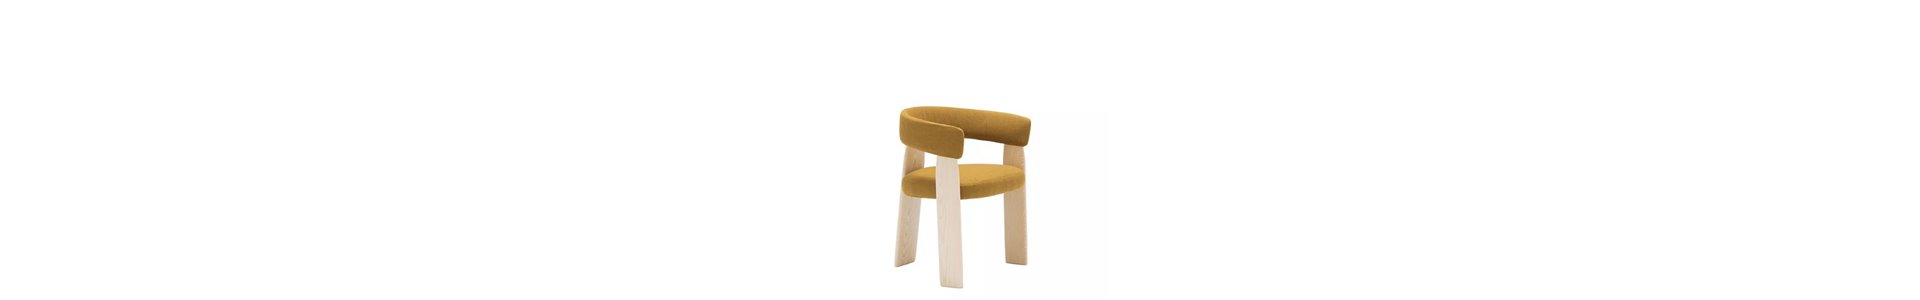 Colección Oru Chair